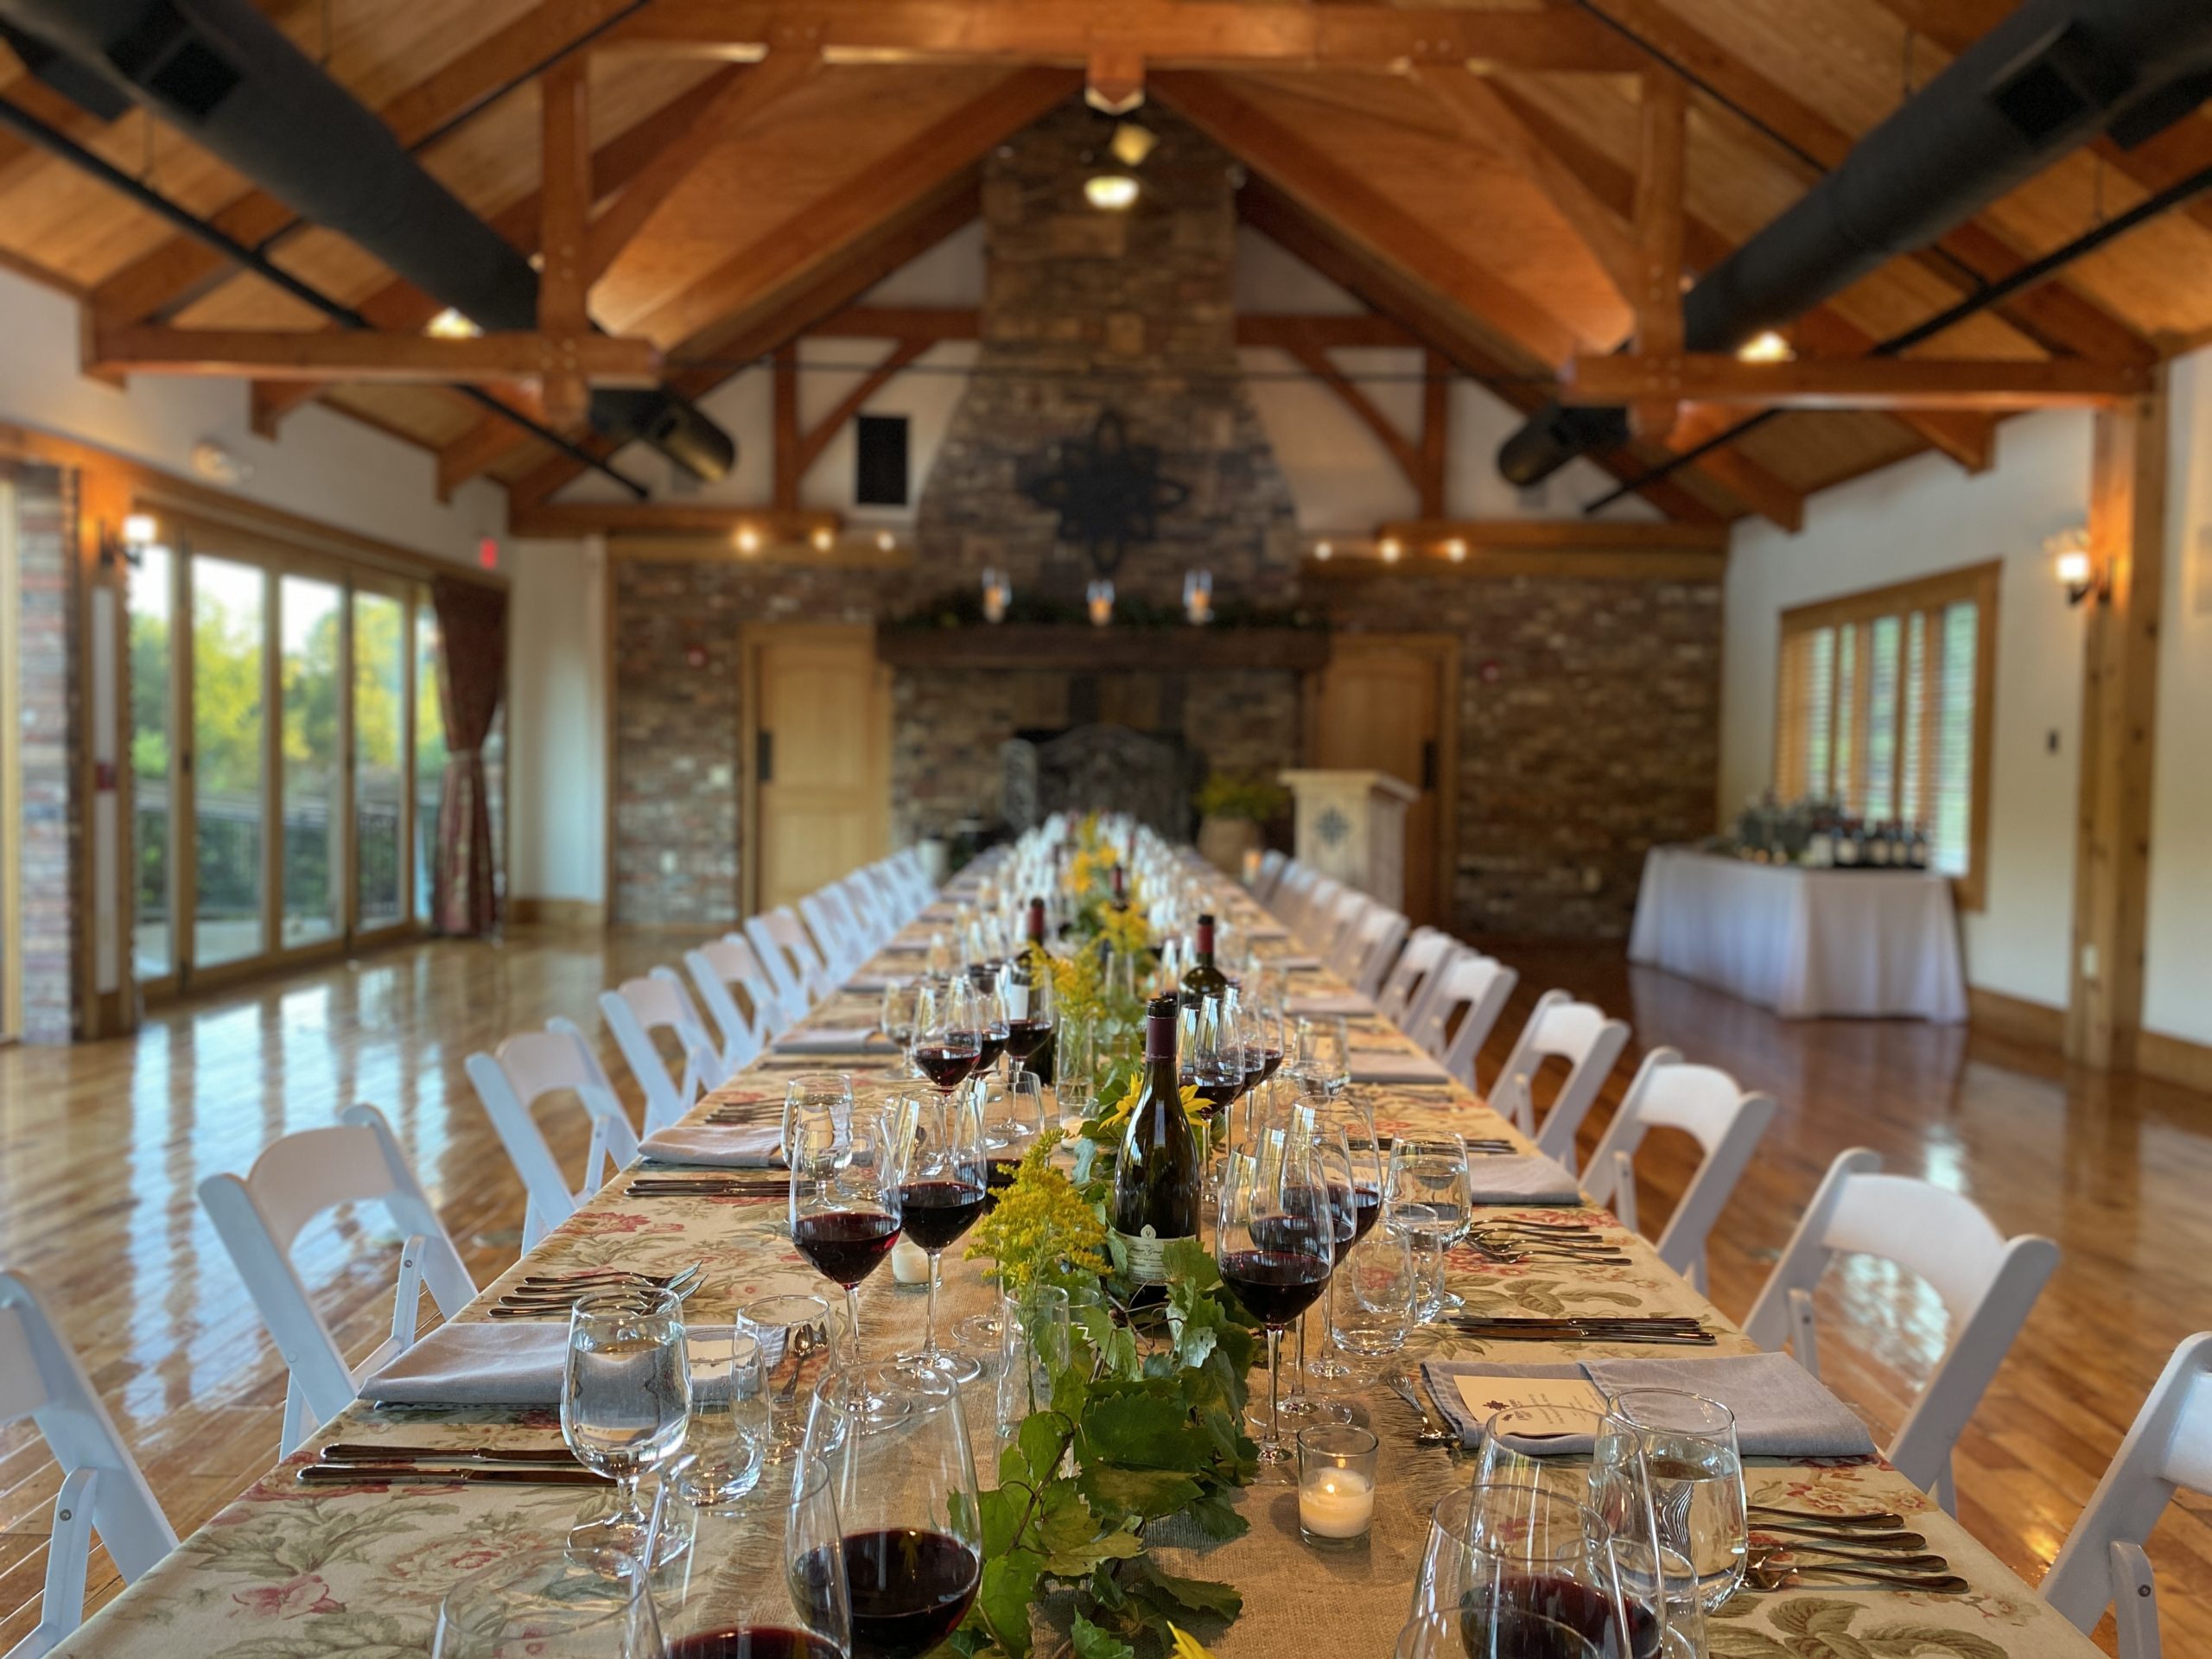 Juneberry Ridge Wine Dinner in September 2021